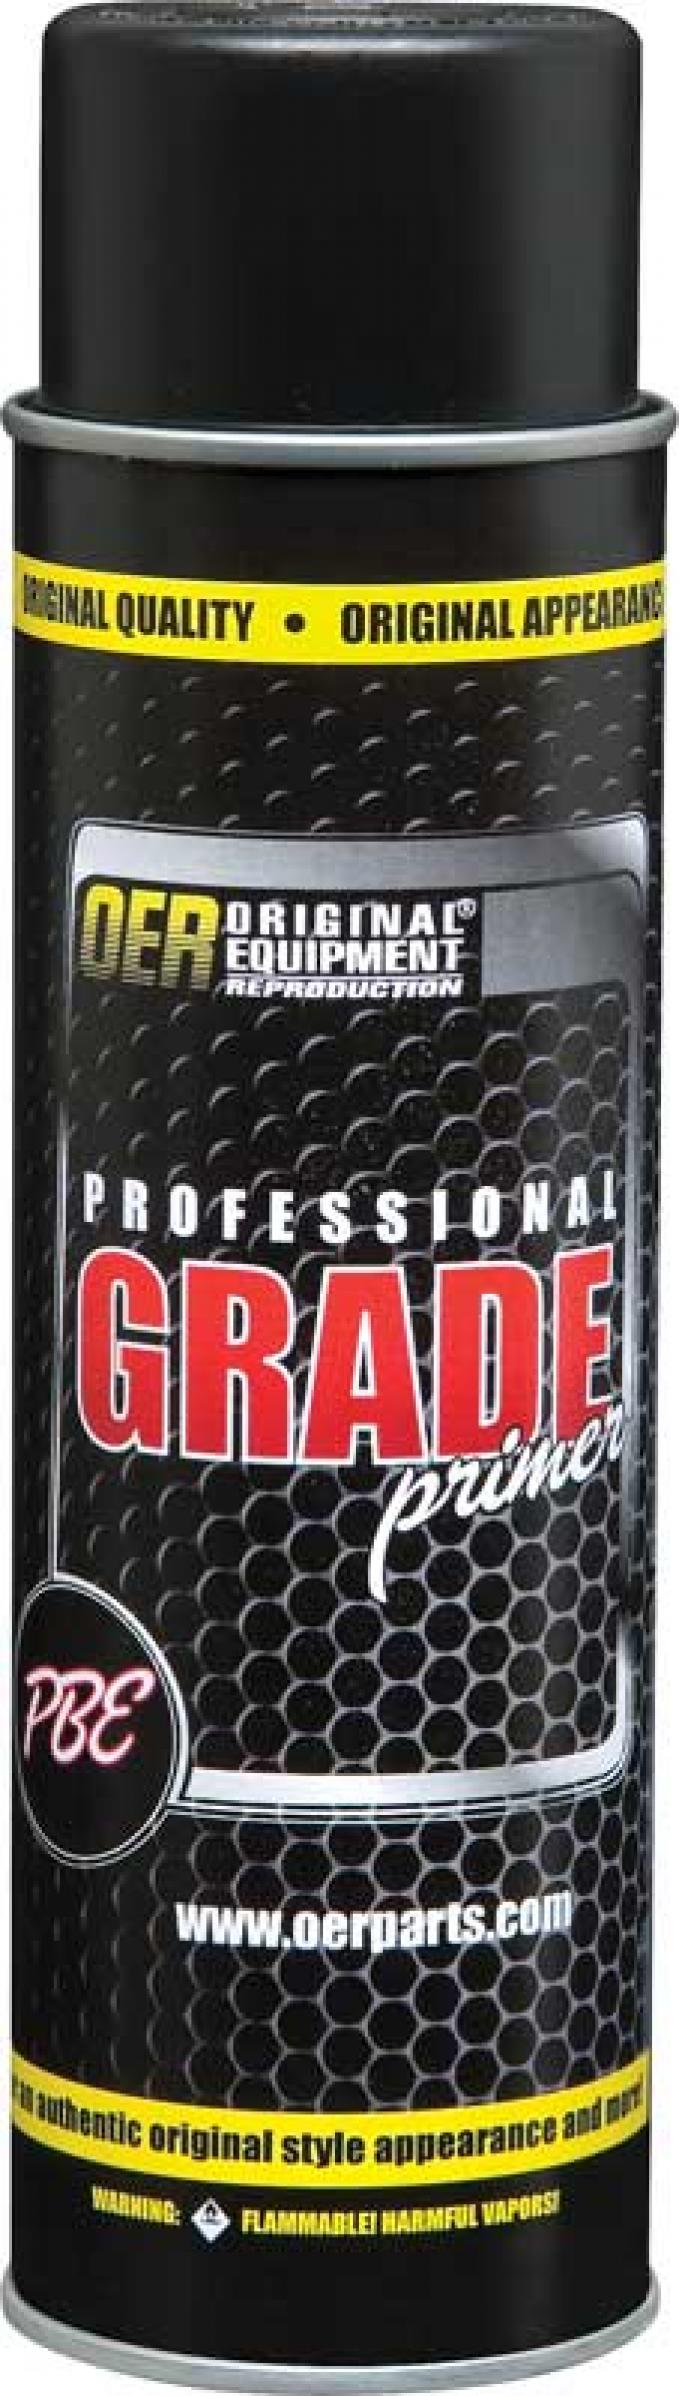 OER Professional Grade Red Oxide High Solids Sanding Primer - 20 Oz Aerosol Can K89575